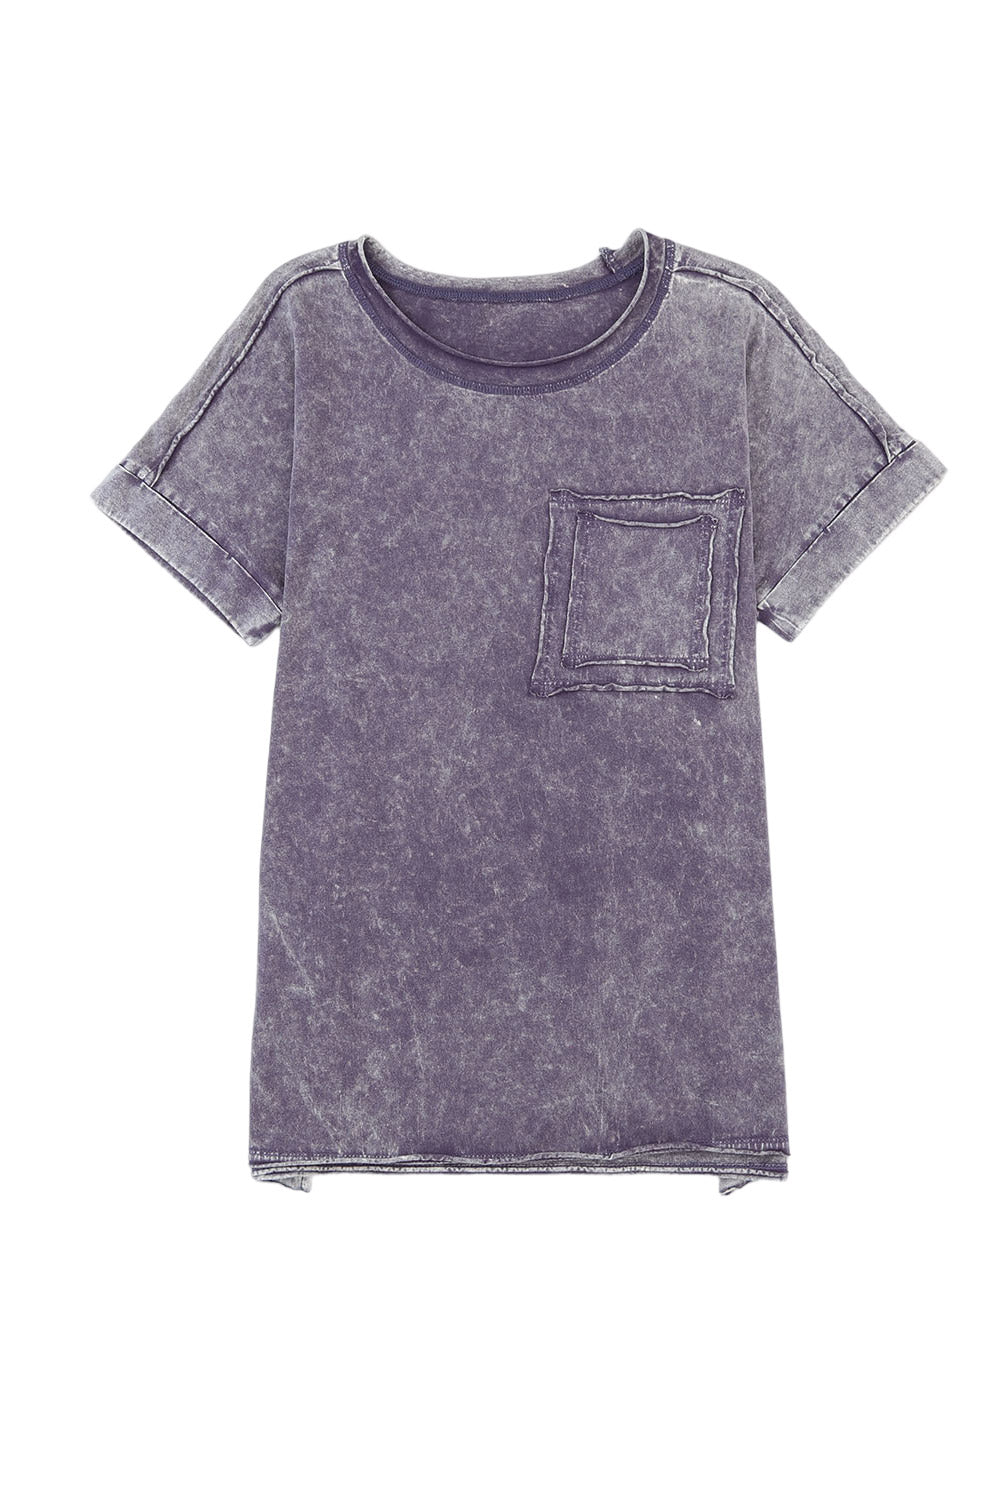 Graues Vintage-T-Shirt mit Taschen und Schlitzen in Mineralwaschung